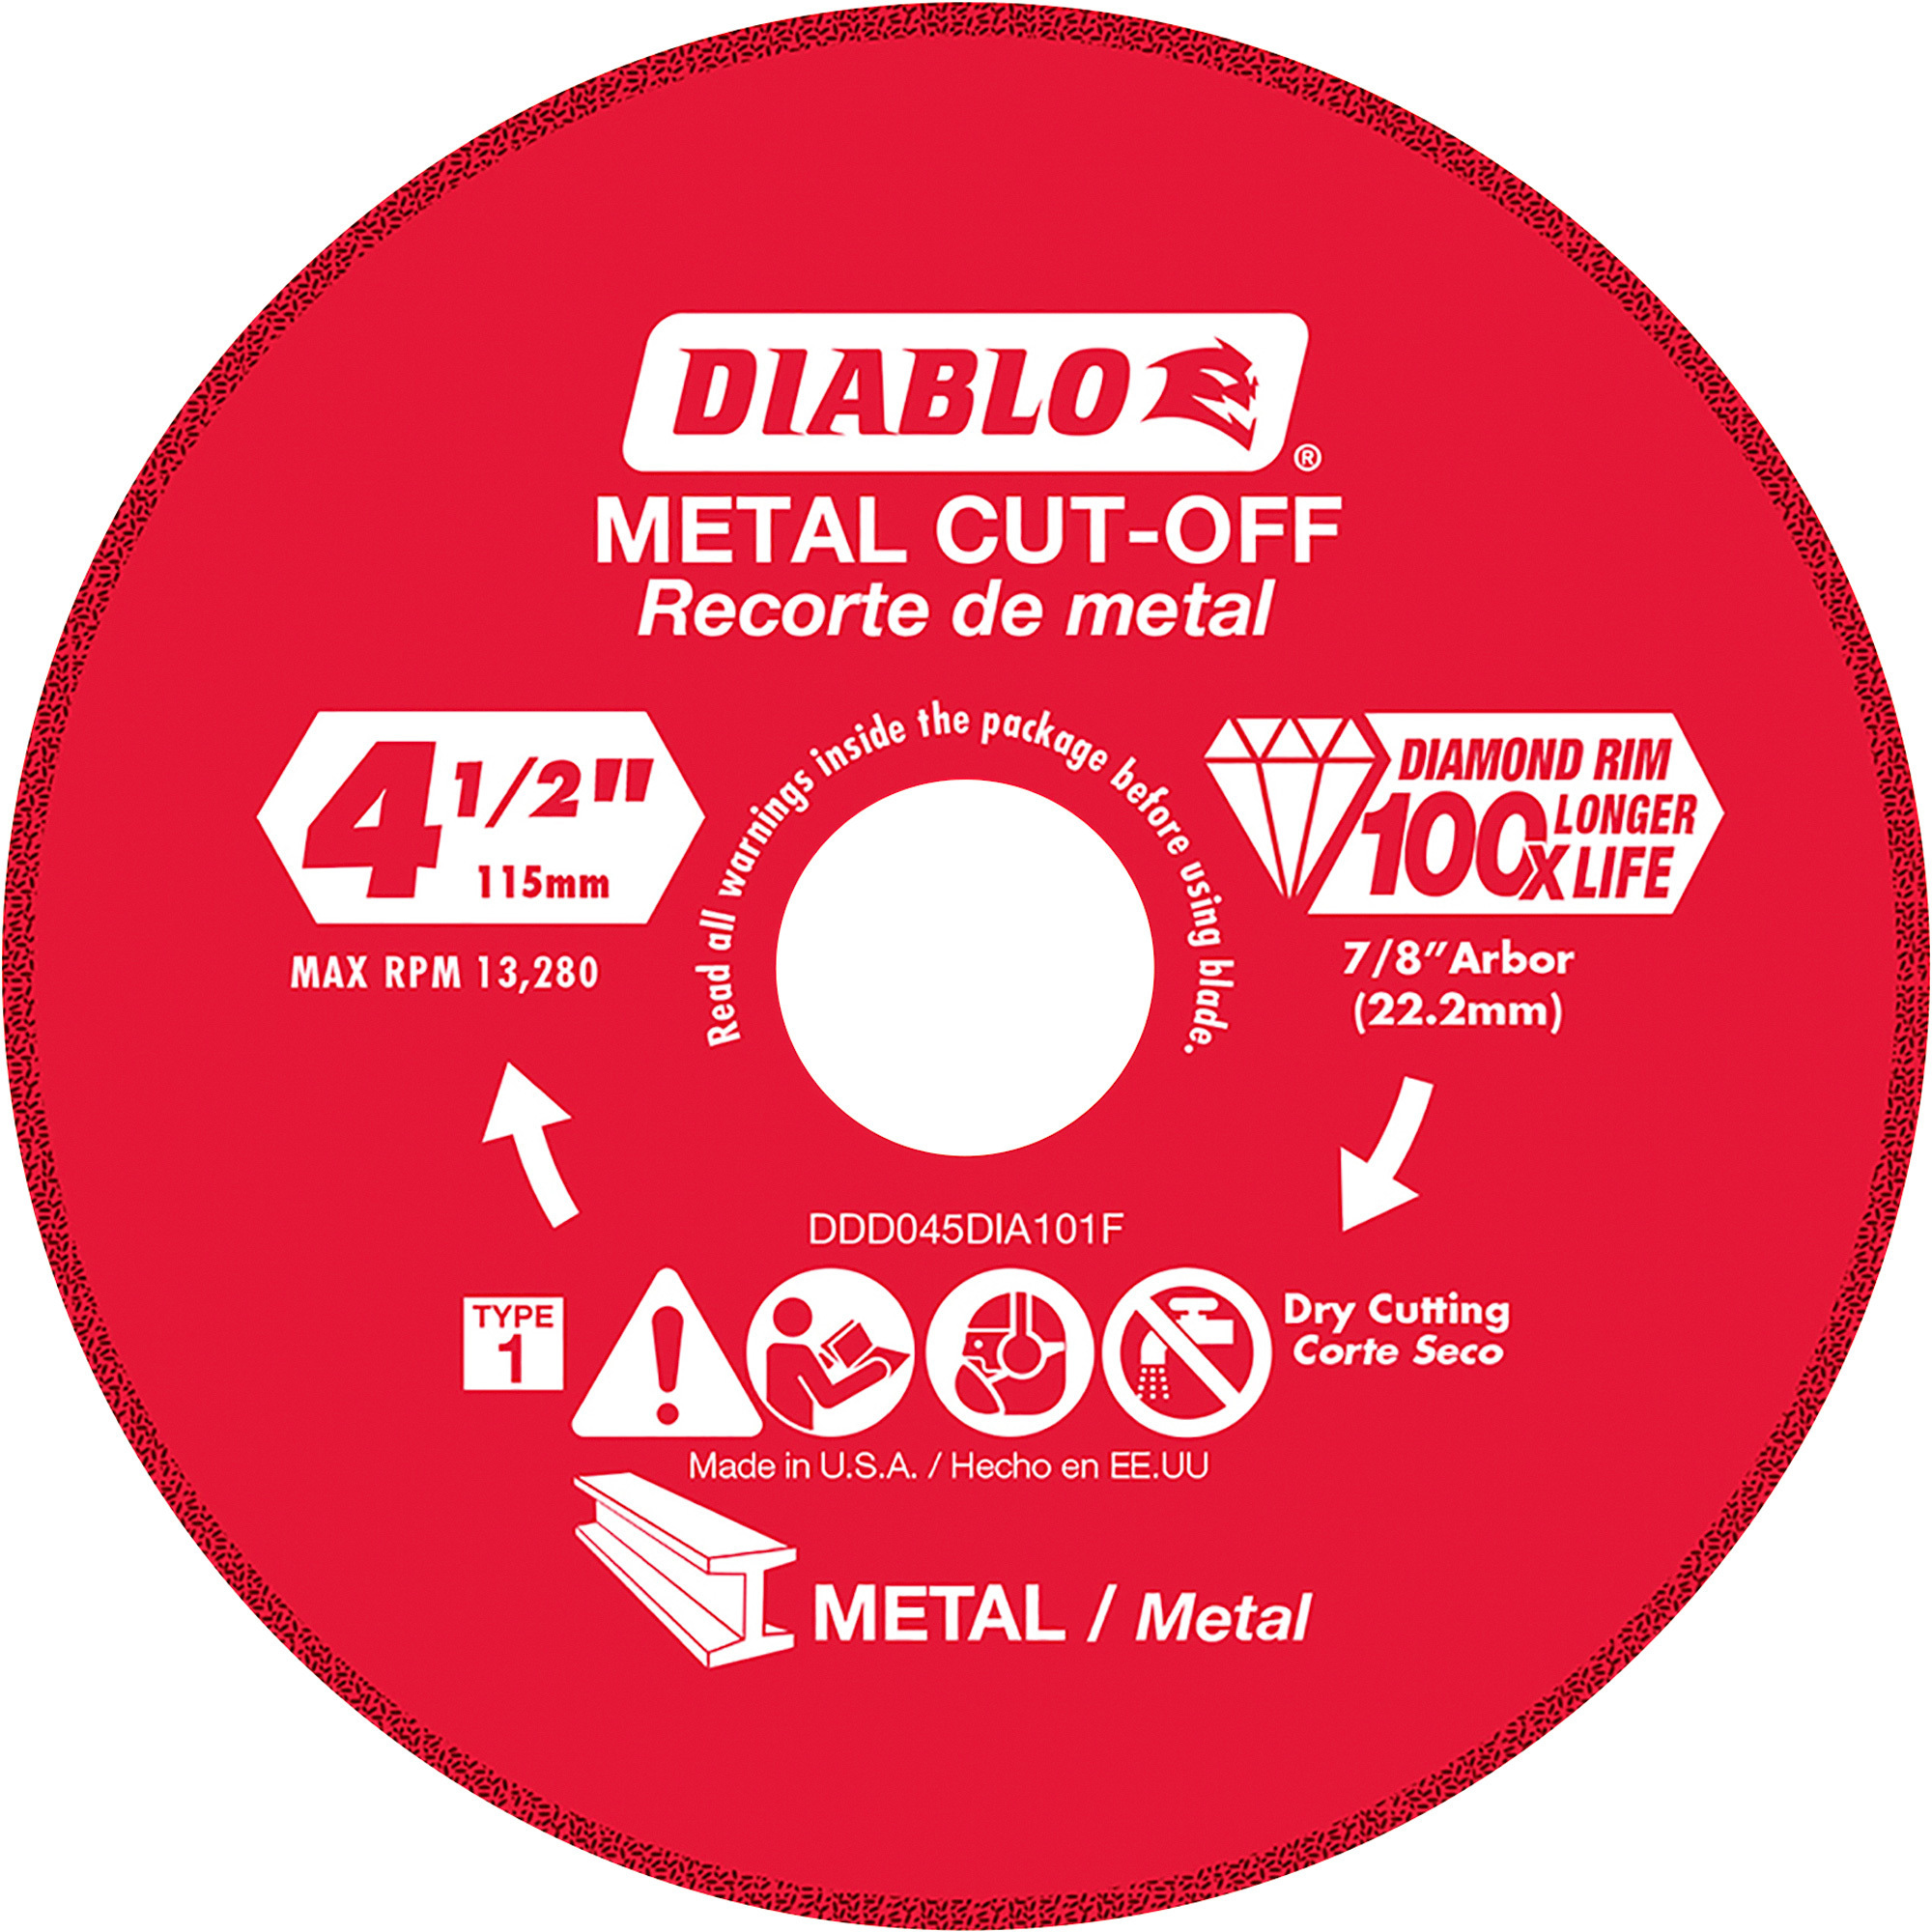 Diablo 4.5Inch Metal Cutting Diamond Disc, Model DDD055DIA101F